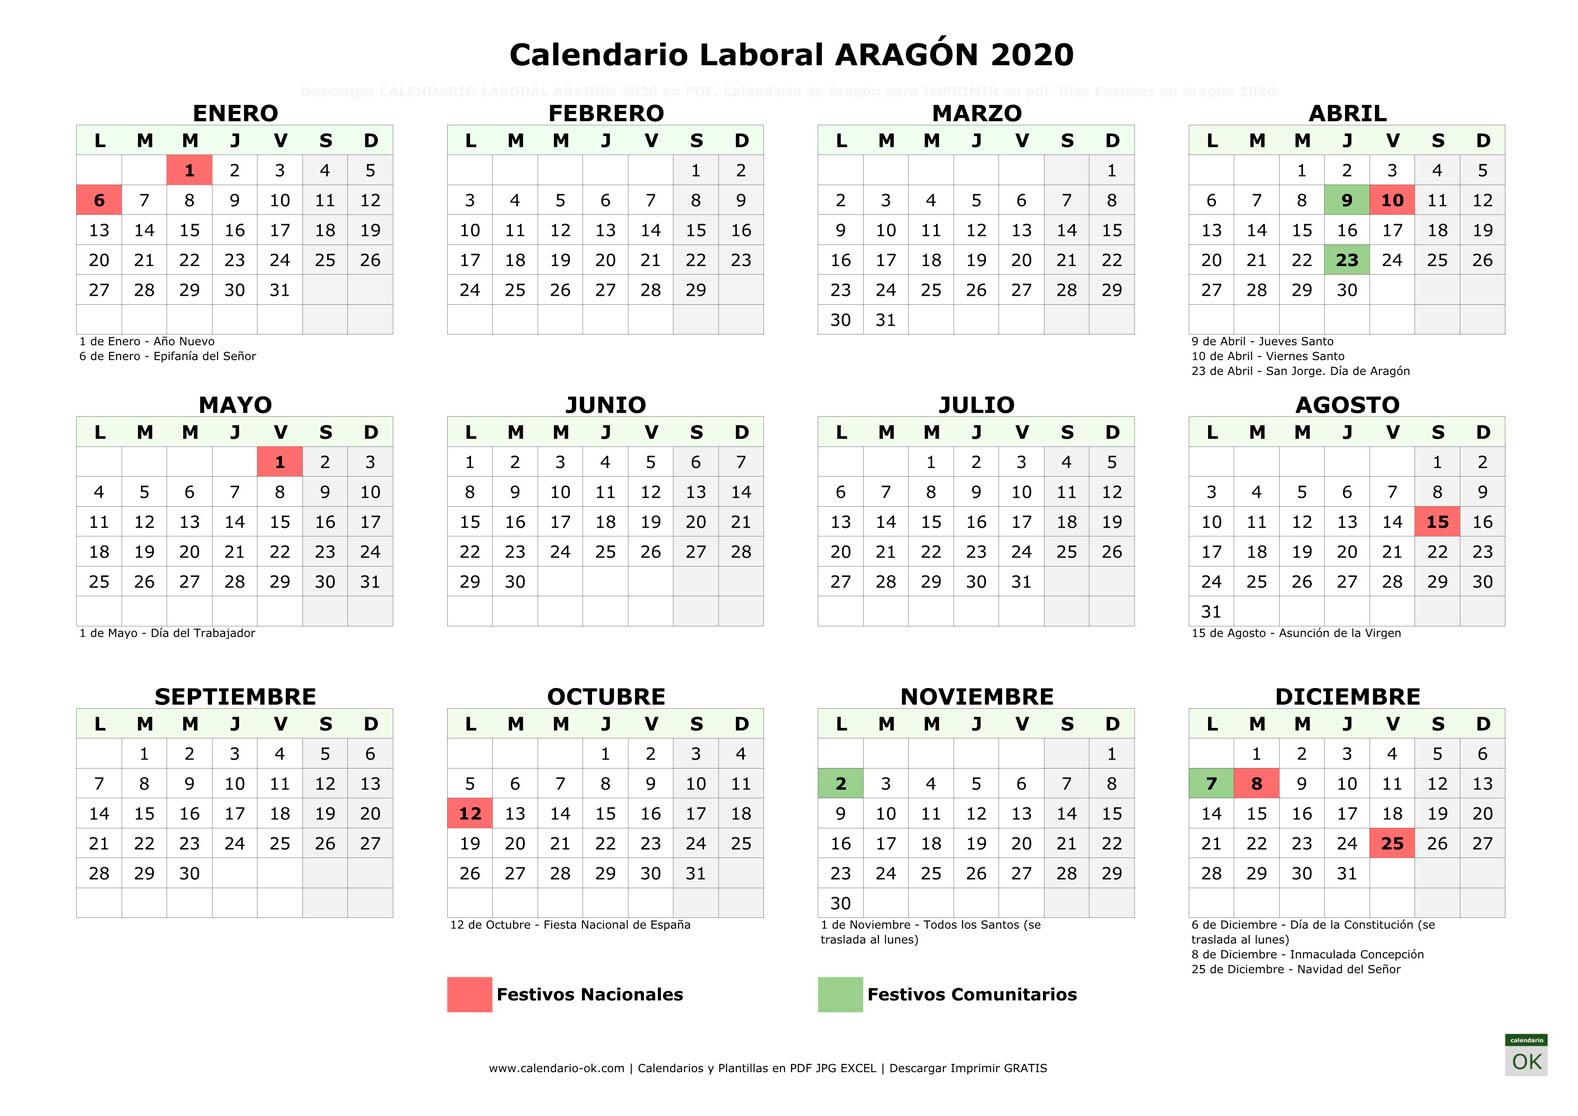 Calendario Laboral ARAGÓN 2020 horizontal